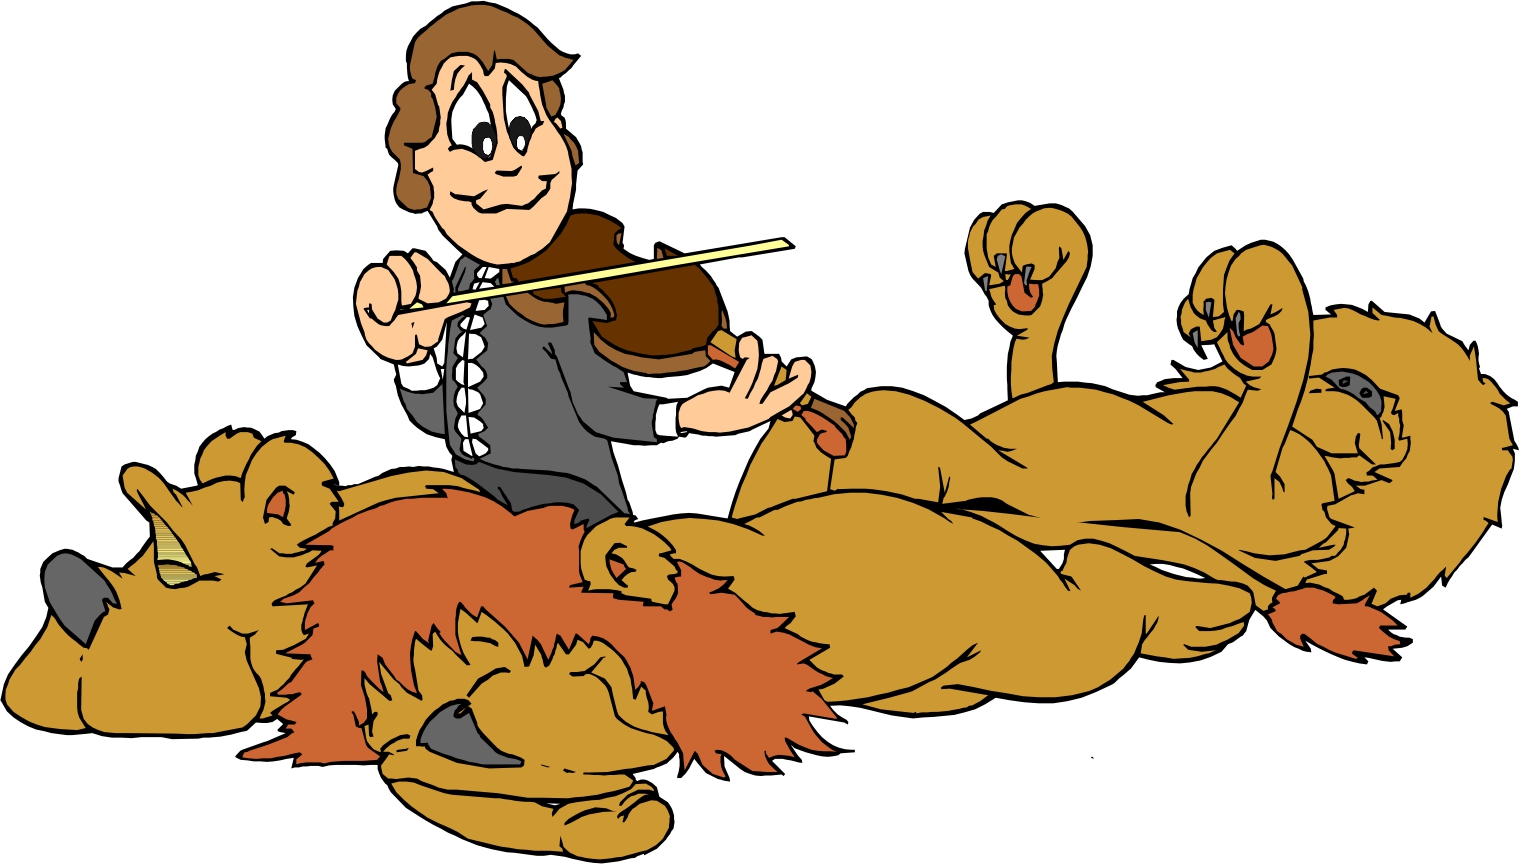 Lions Cartoon Images - ClipArt Best